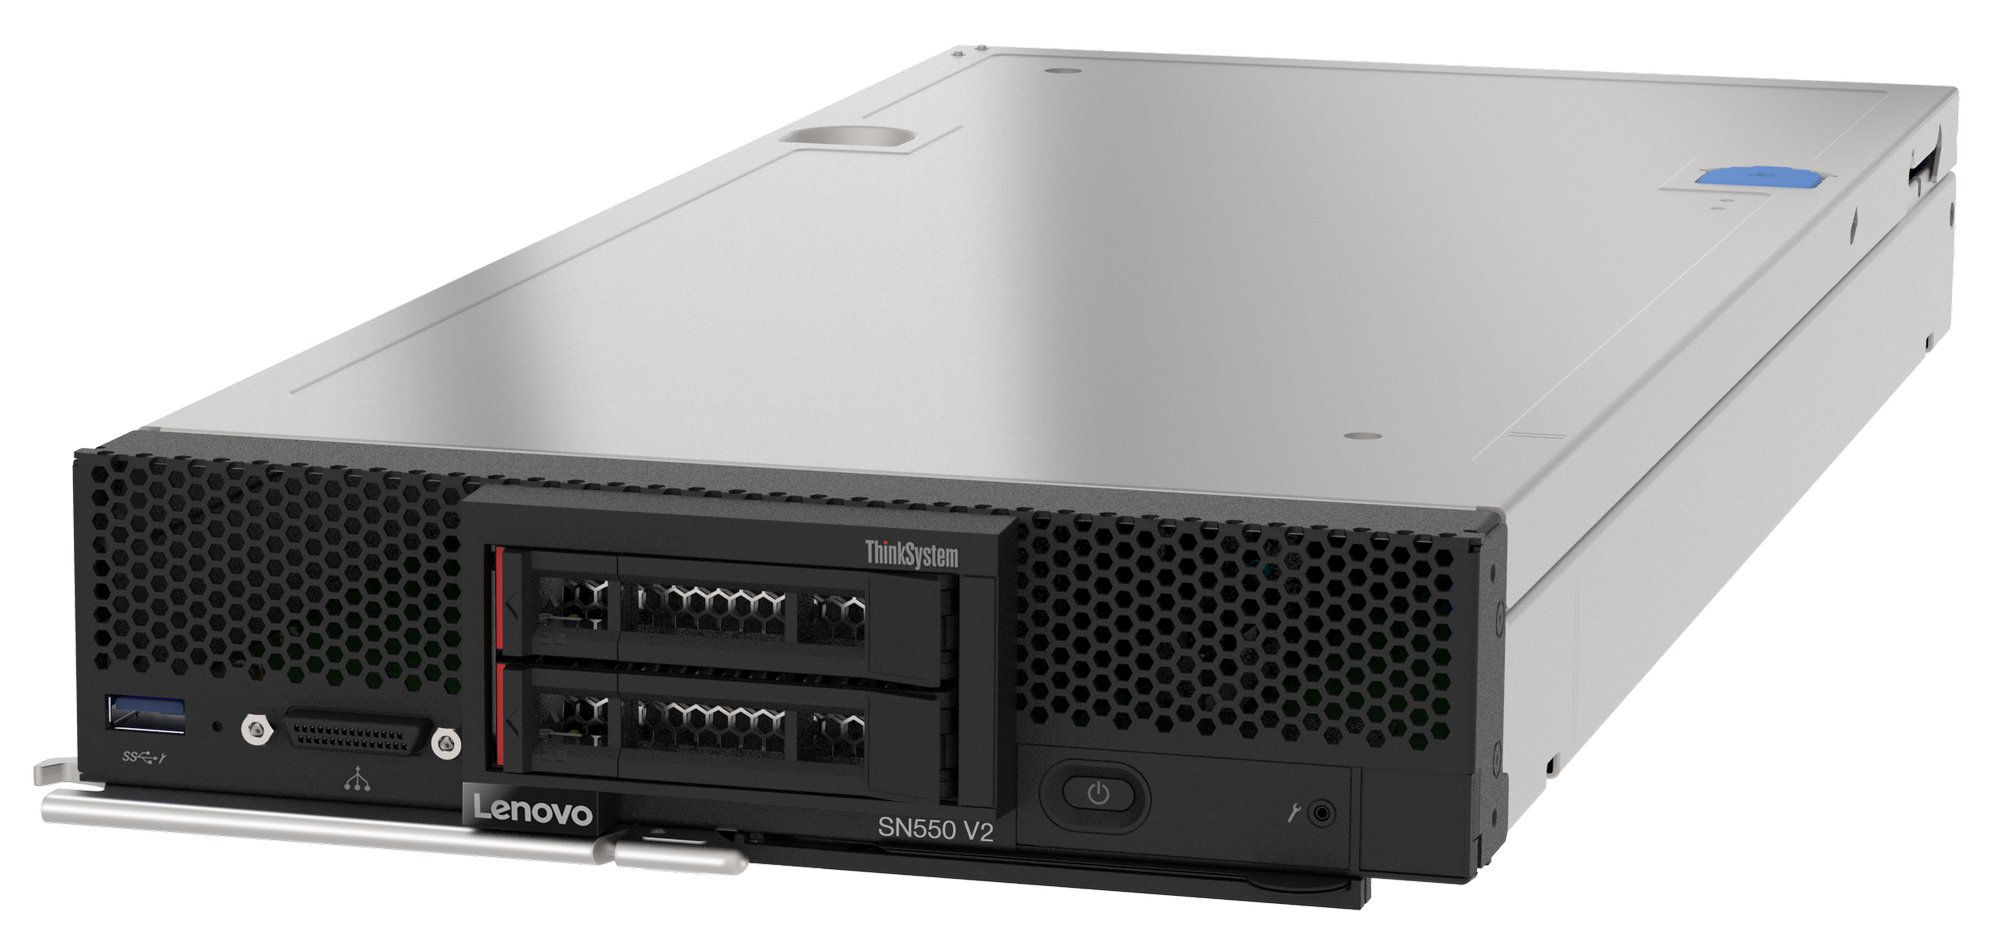 Lenovo ThinkSystem SN550 V2 server